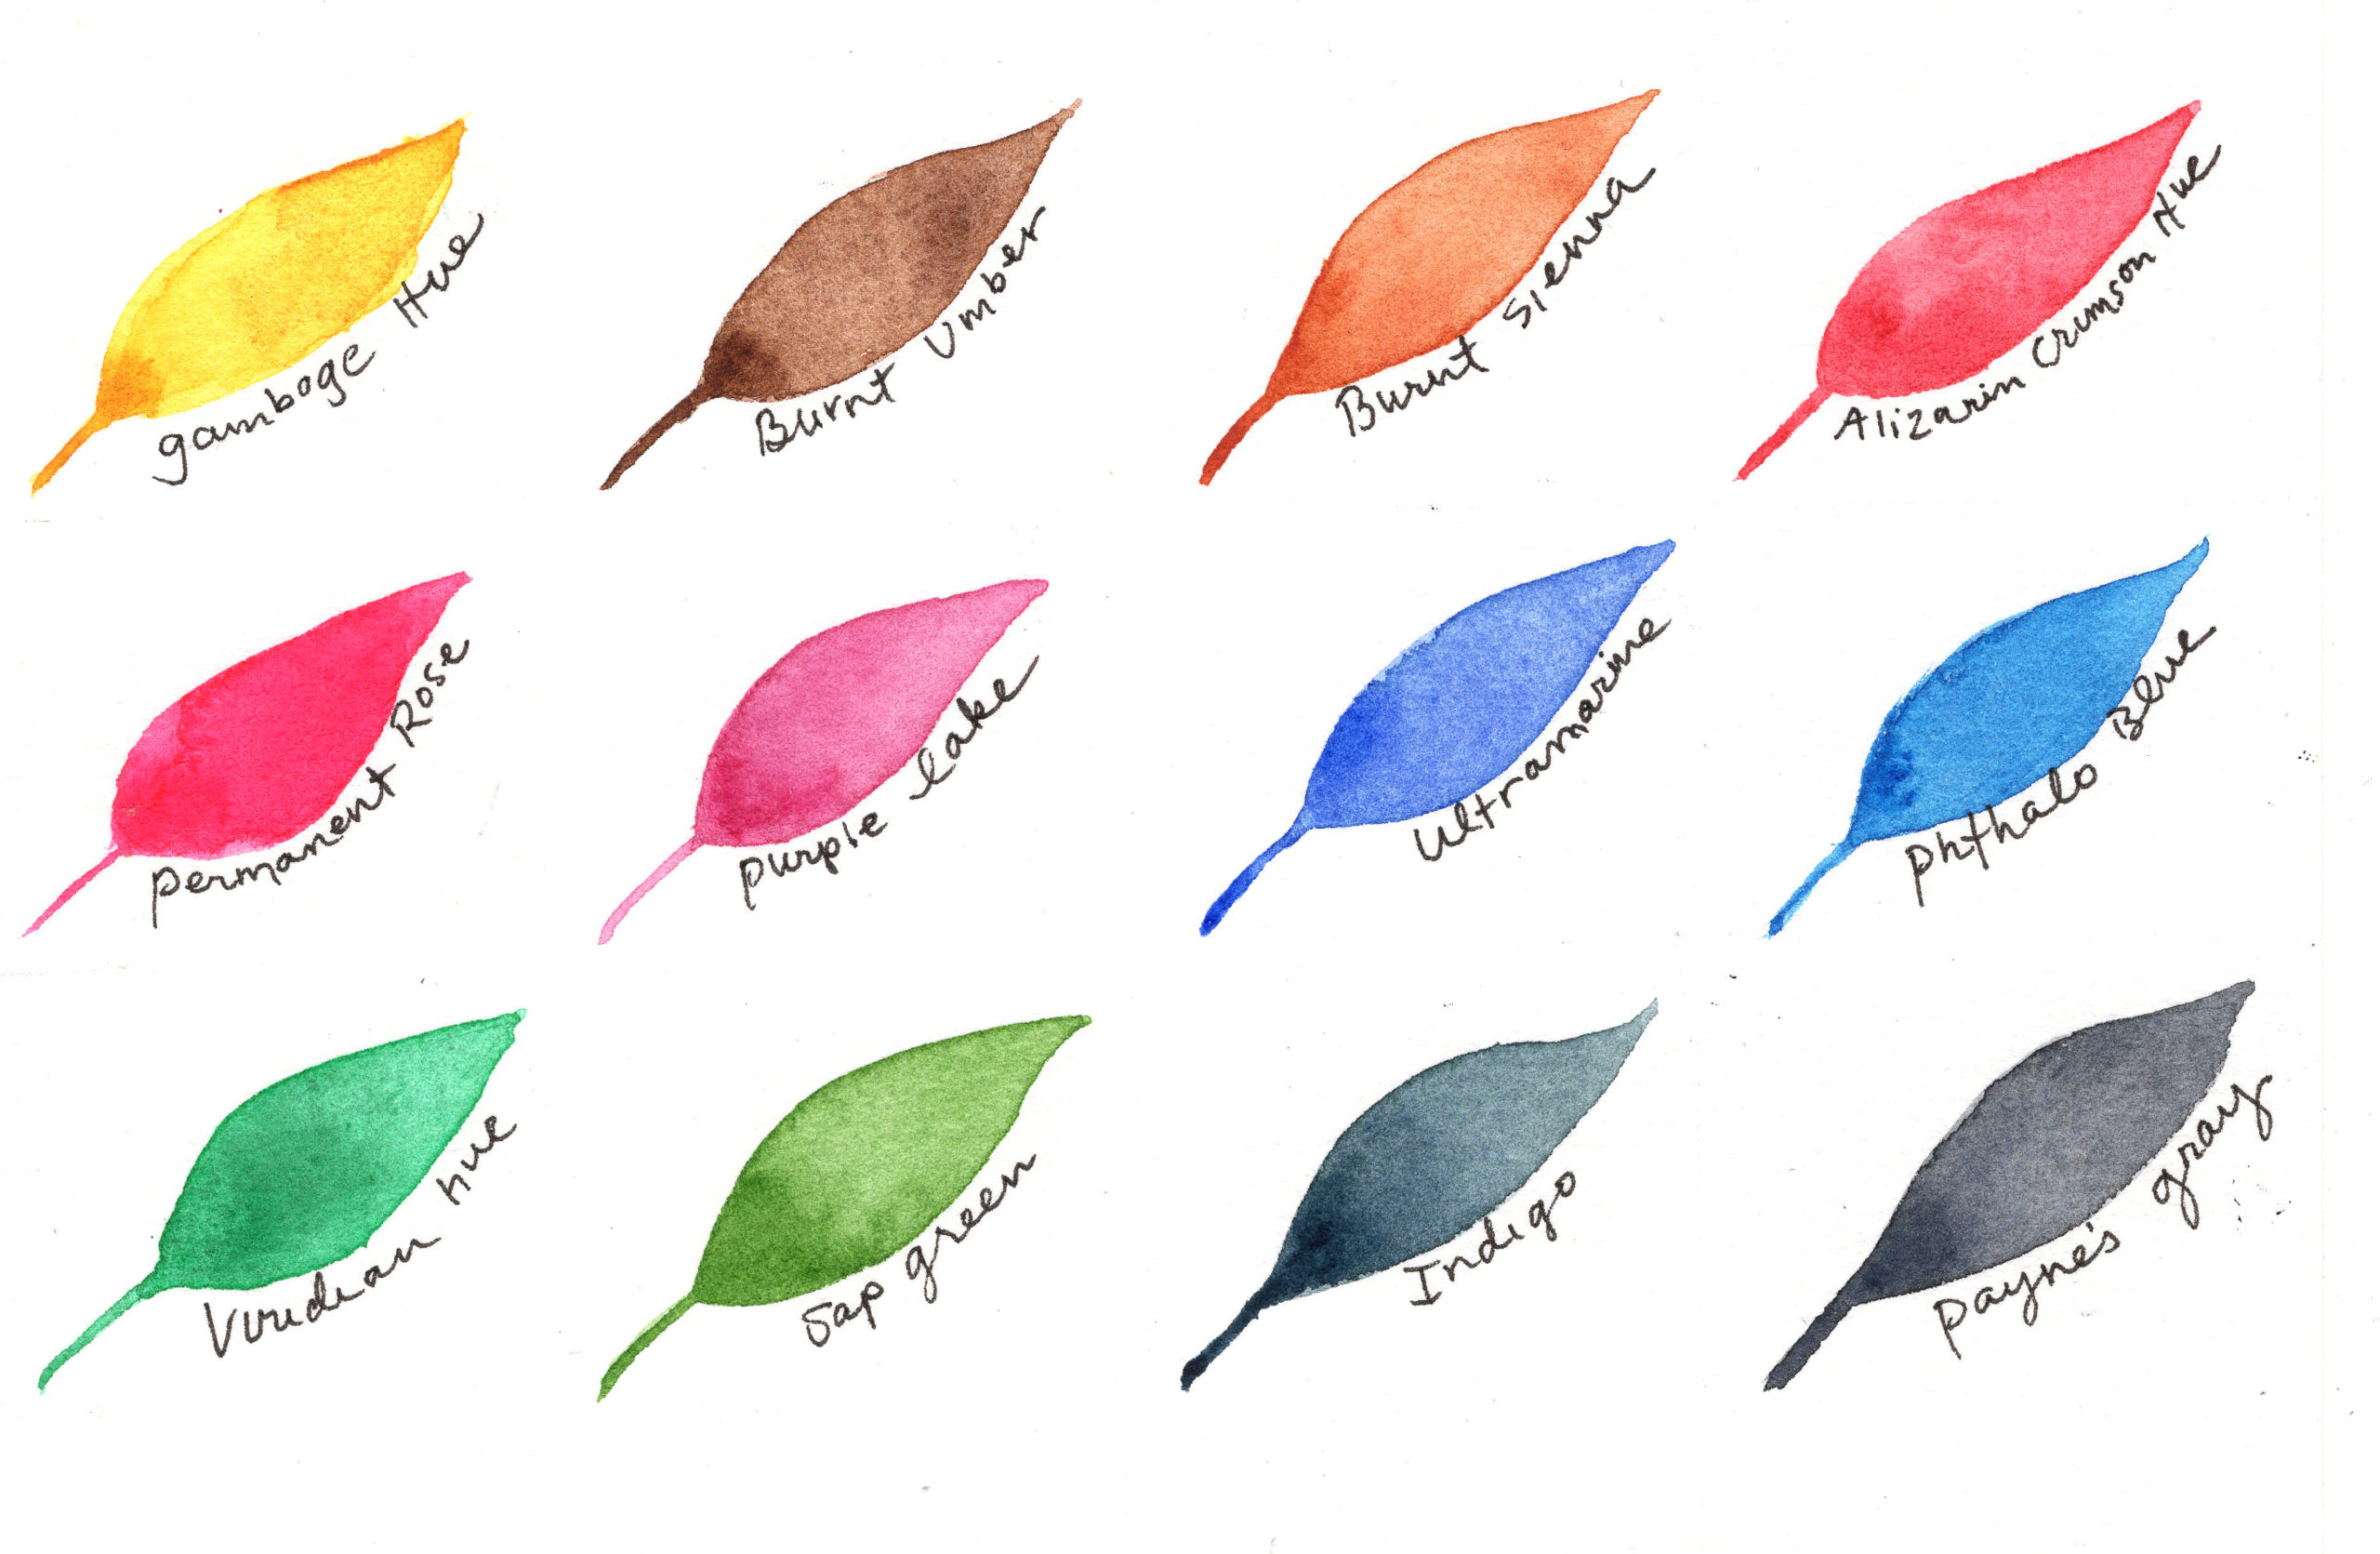 Yasutomo Japanese Watercolors Sets